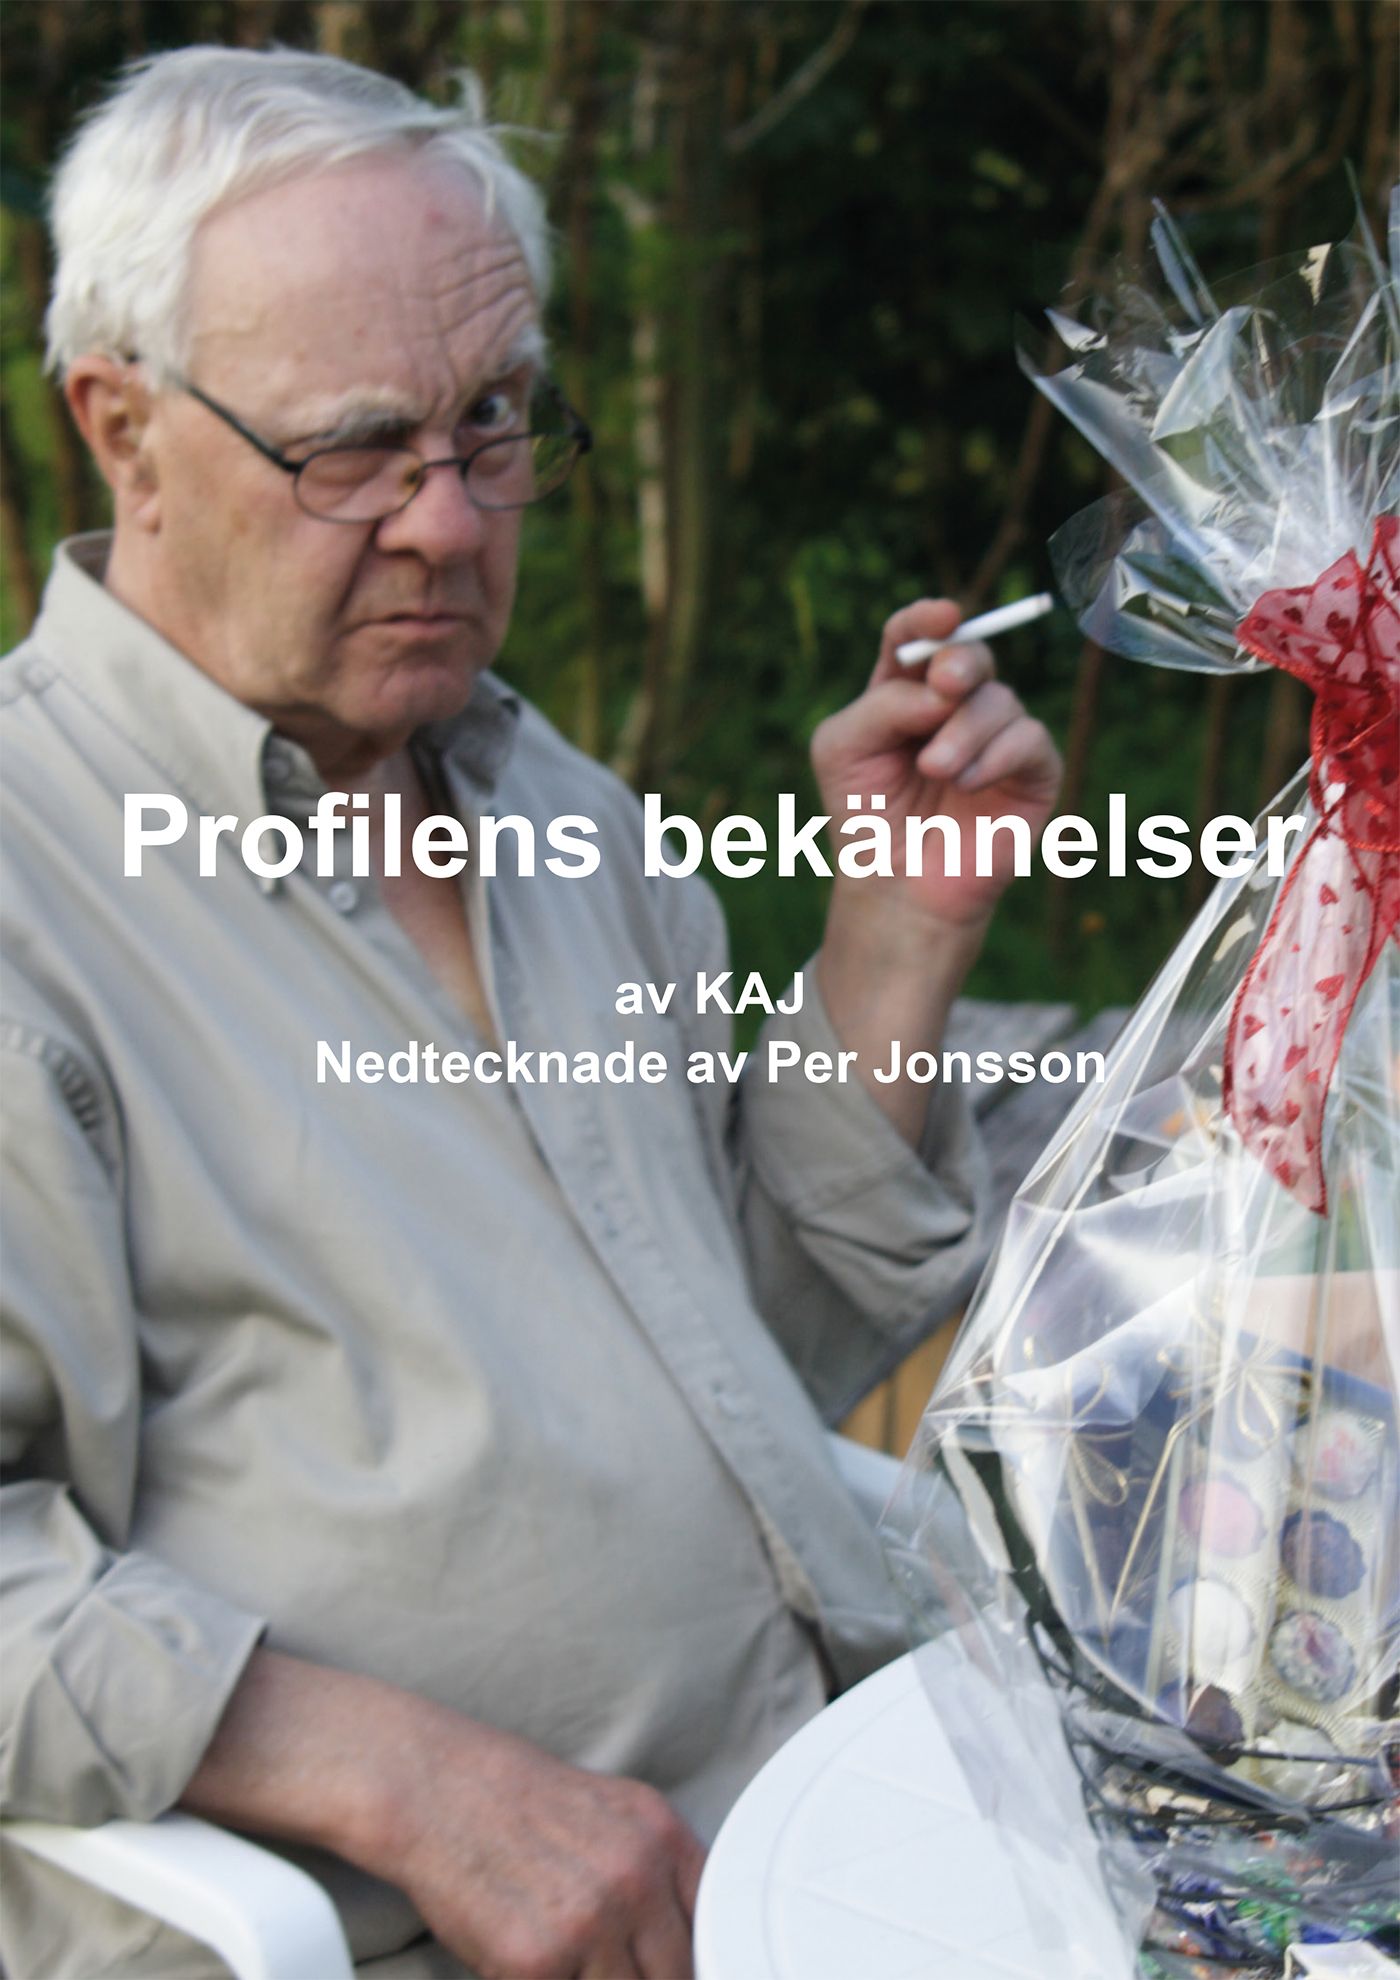 Profilens bekännelser, eBook by Per Jonsson